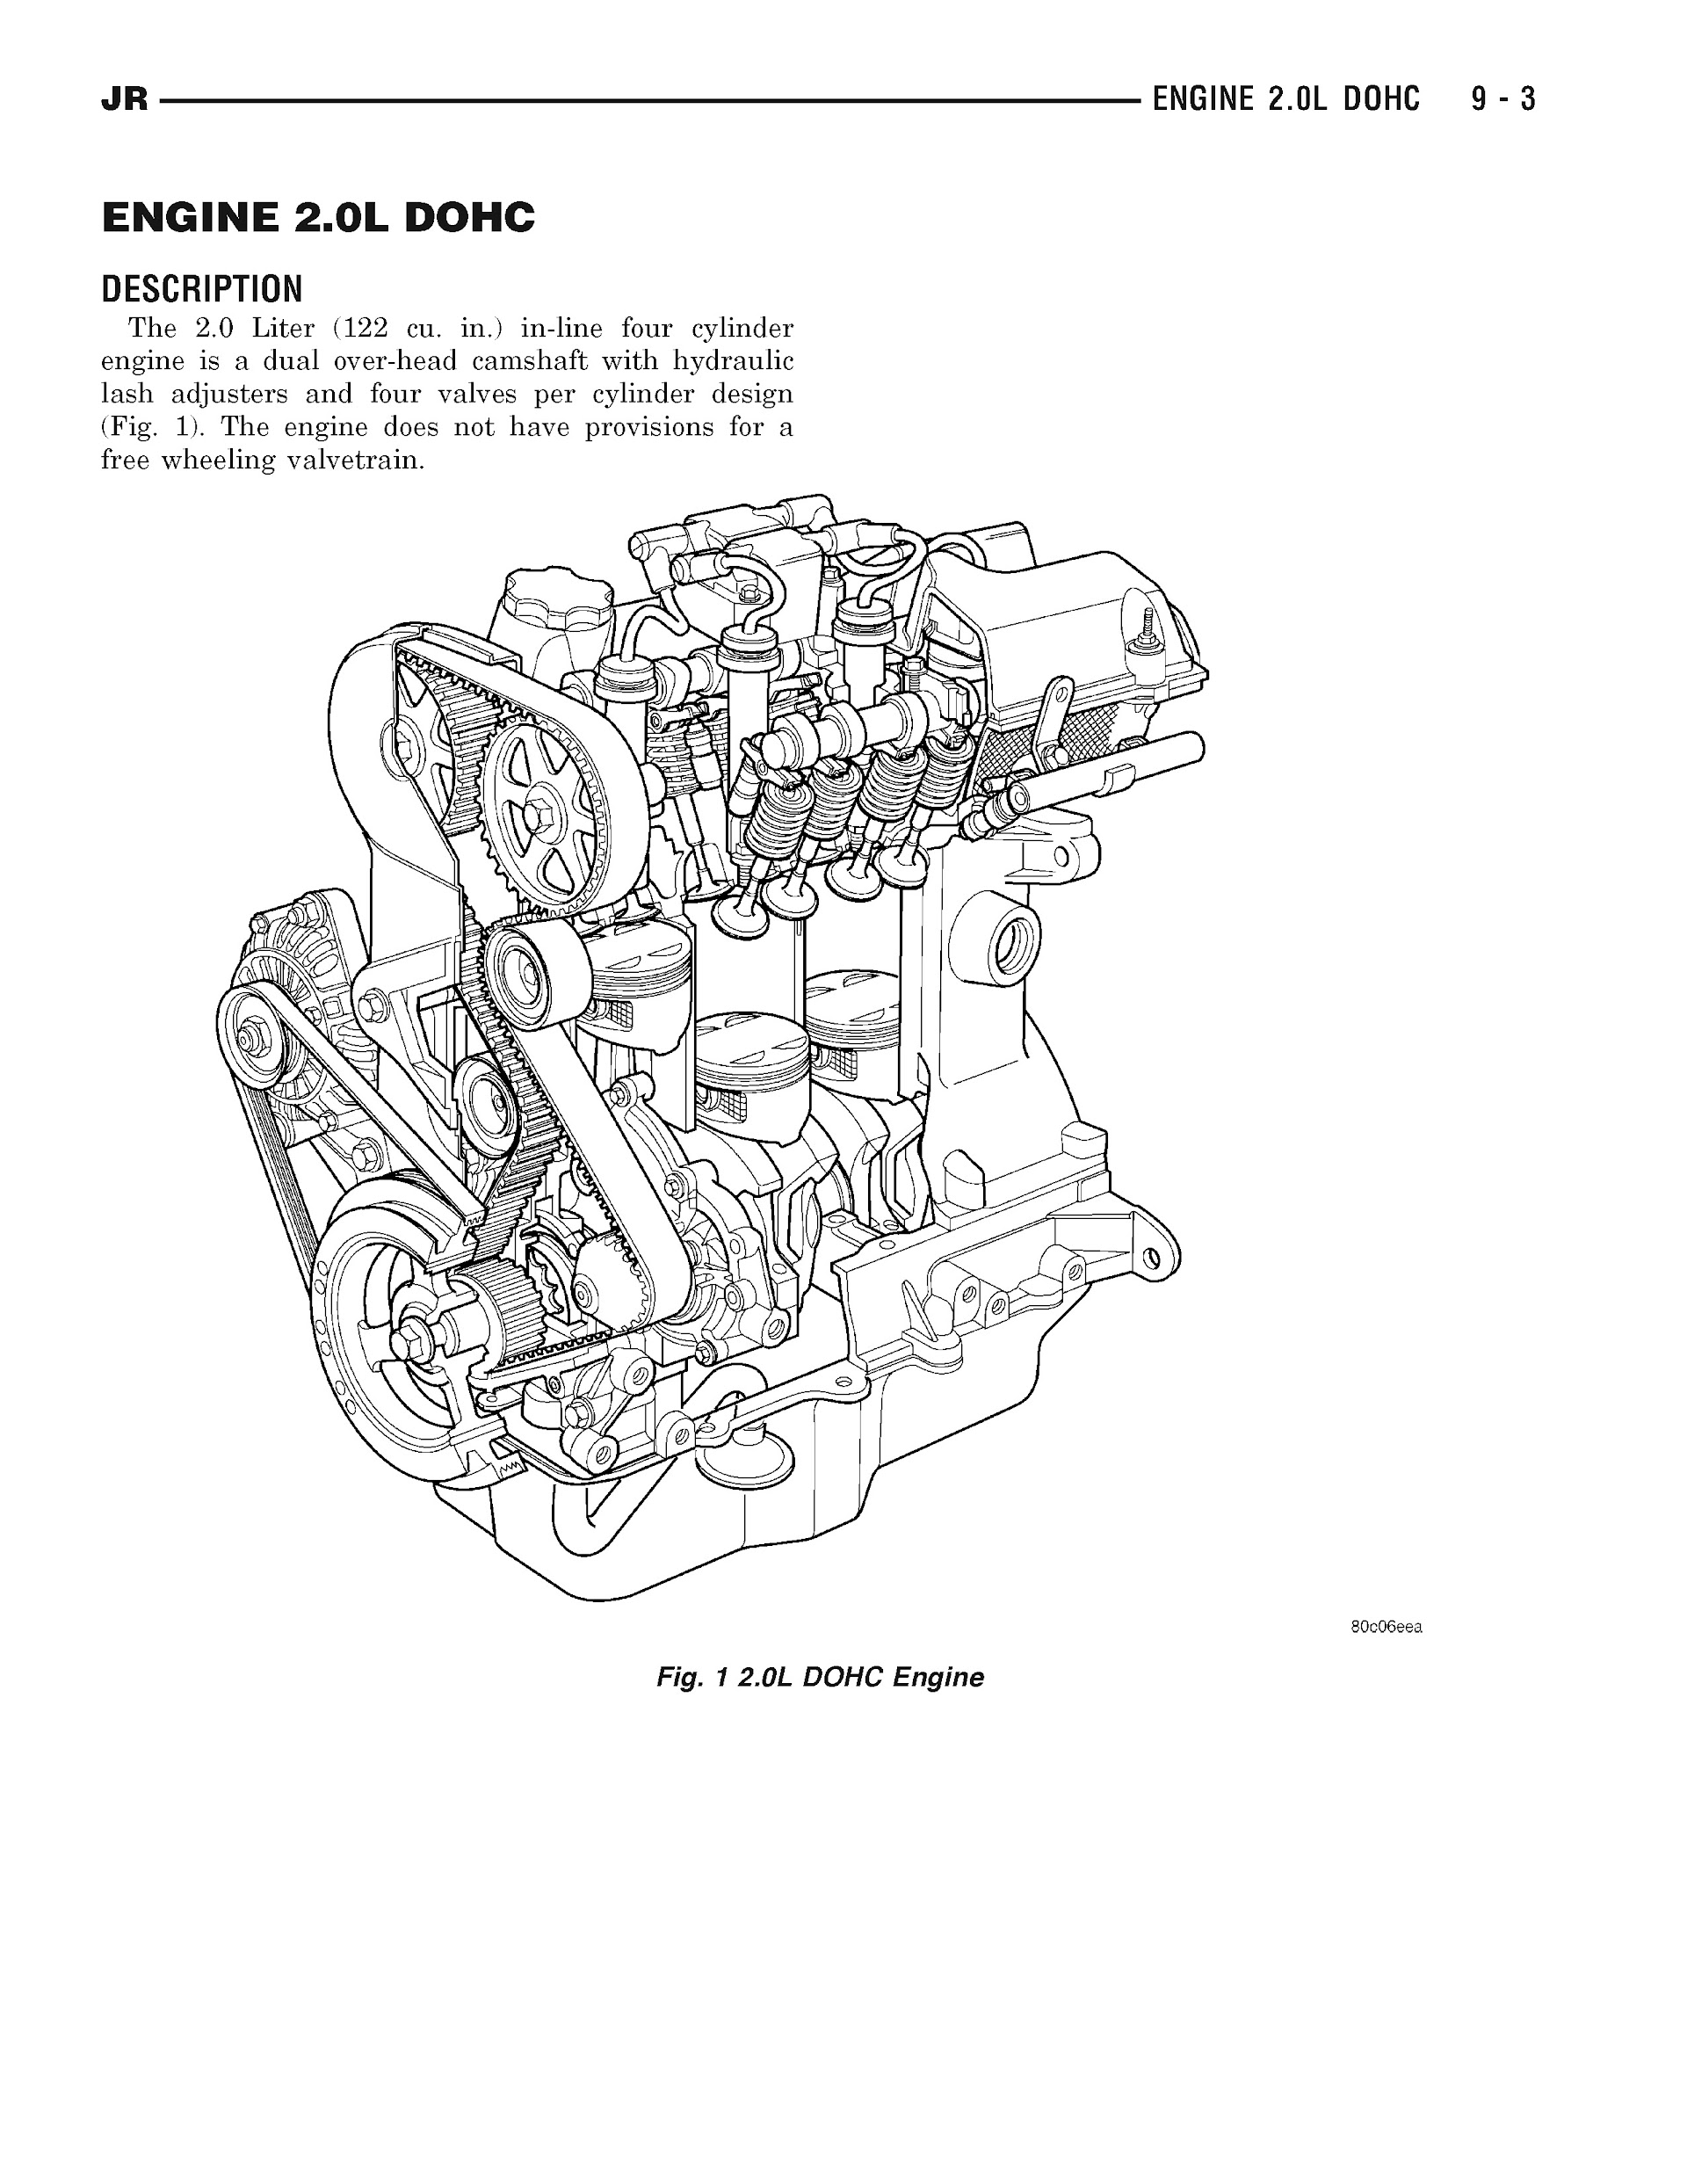 2001-2006 Chrysler Sebring Repair Manual, Engine 2.0L DOHC